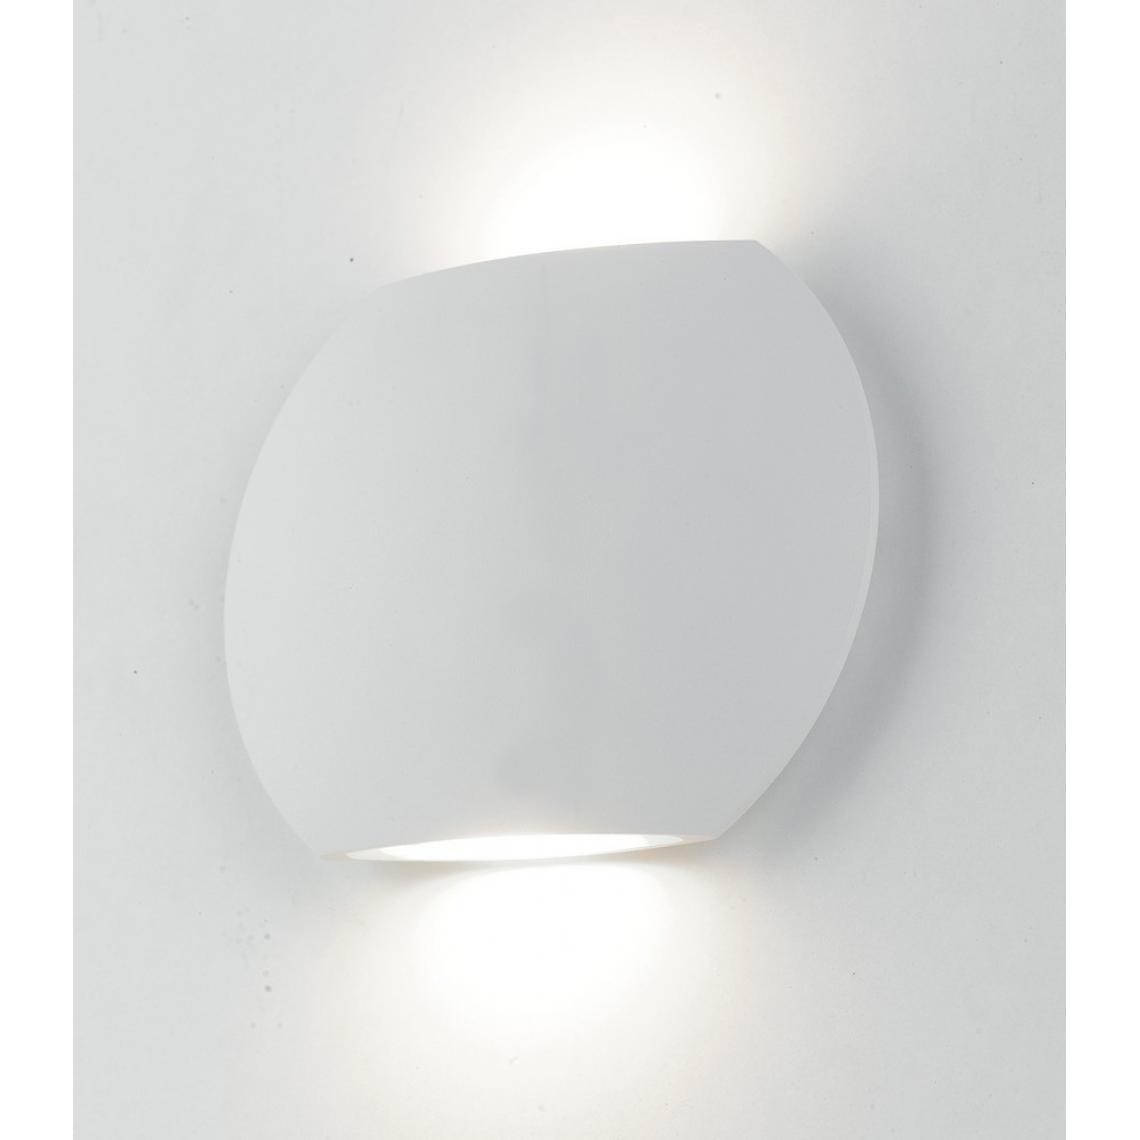 Fan Europe - Luminaire d'extérieur LED 2 vers le haut blanc, IP54 520lm 3000K 16x12,8x3,5cm - Lampadaire